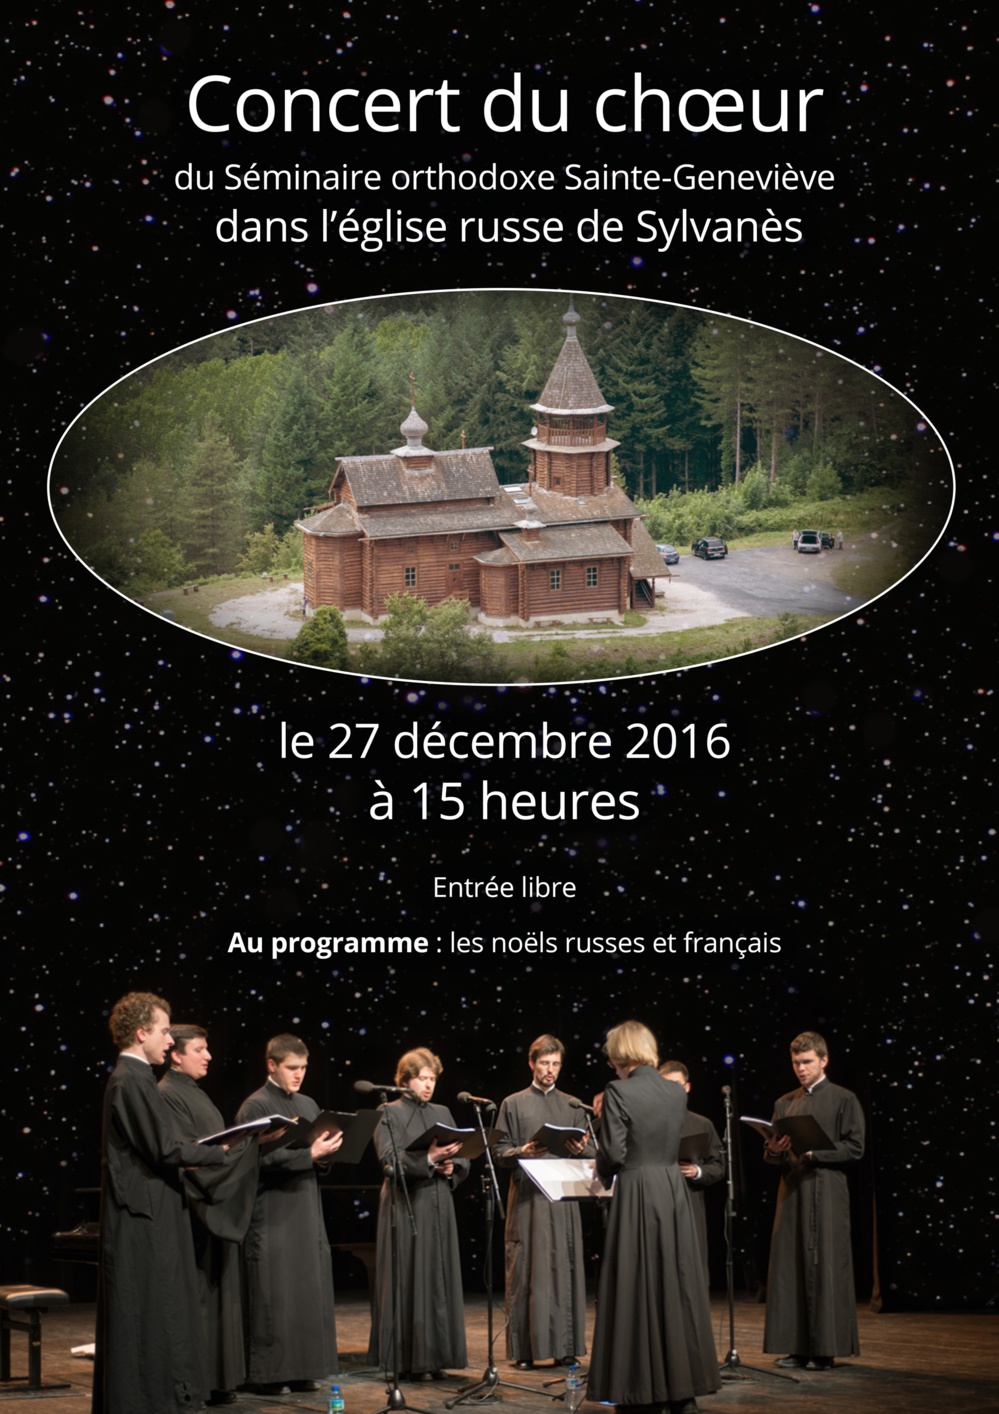 Concert de Noël du choeur du Séminaire à l'église russe de Sylvanès le 27 décembre à 15 h